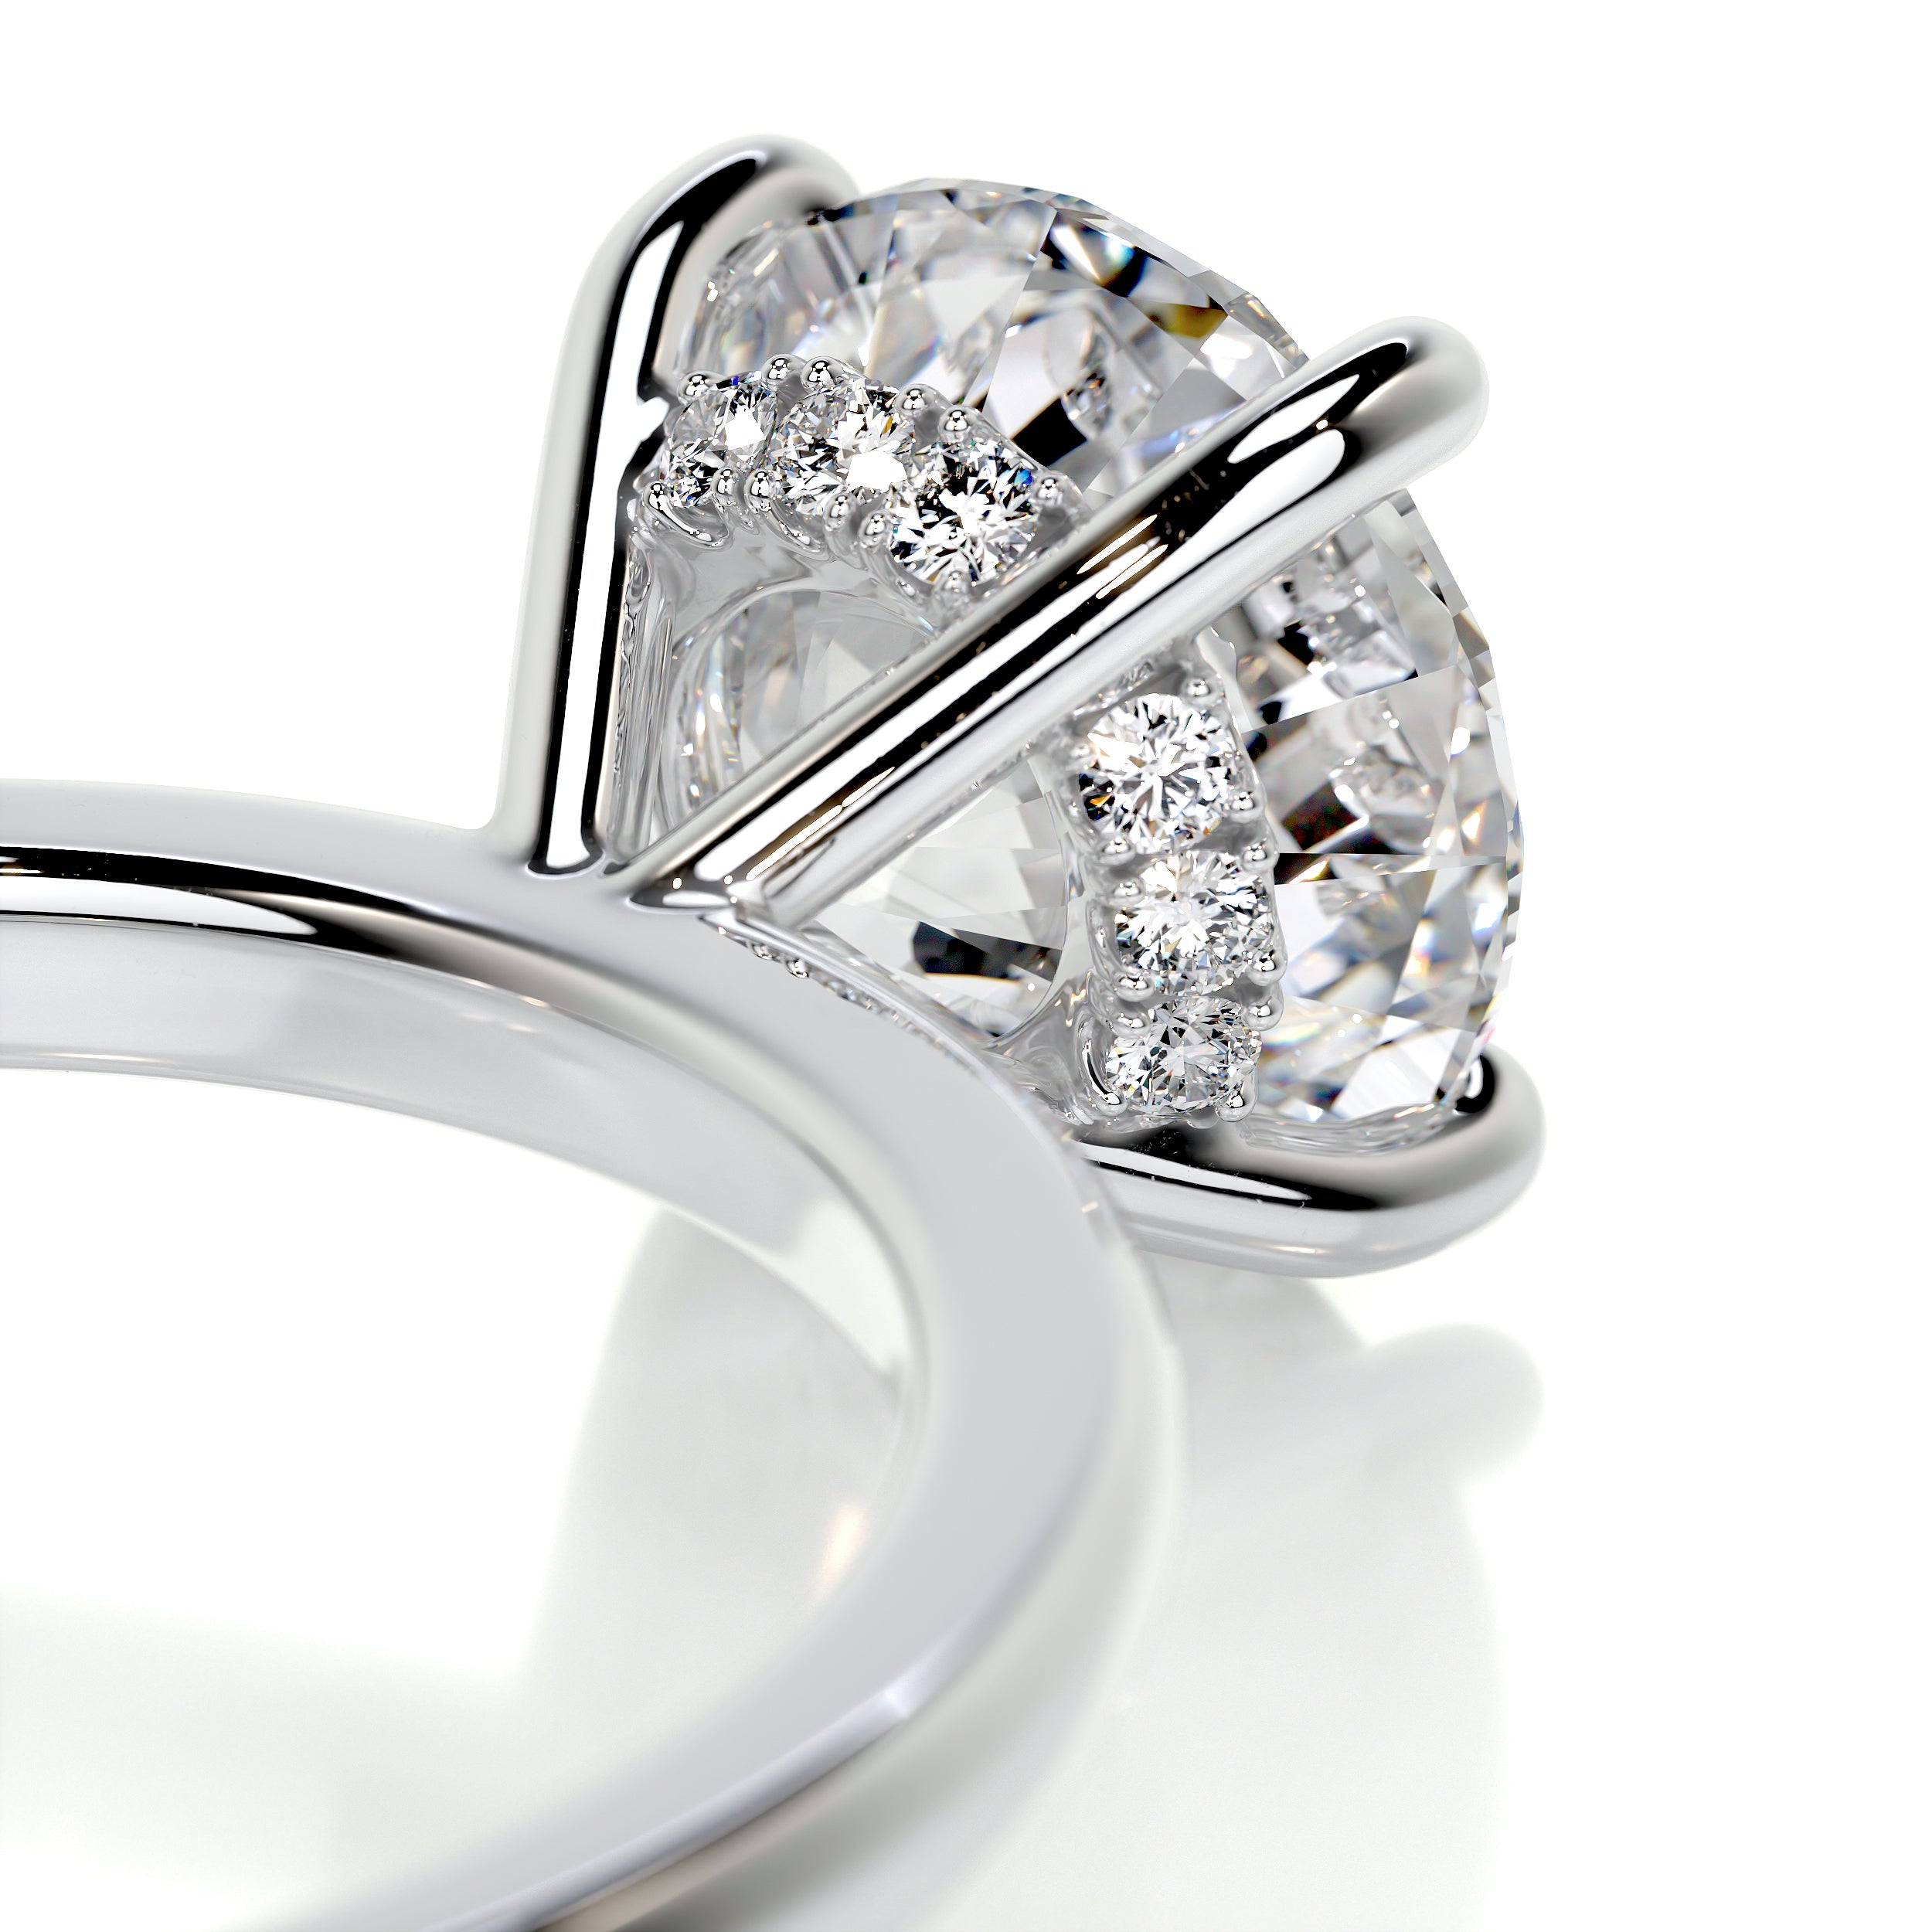 Cynthia Diamond Engagement Ring   (2.1 Carat) -18K White Gold